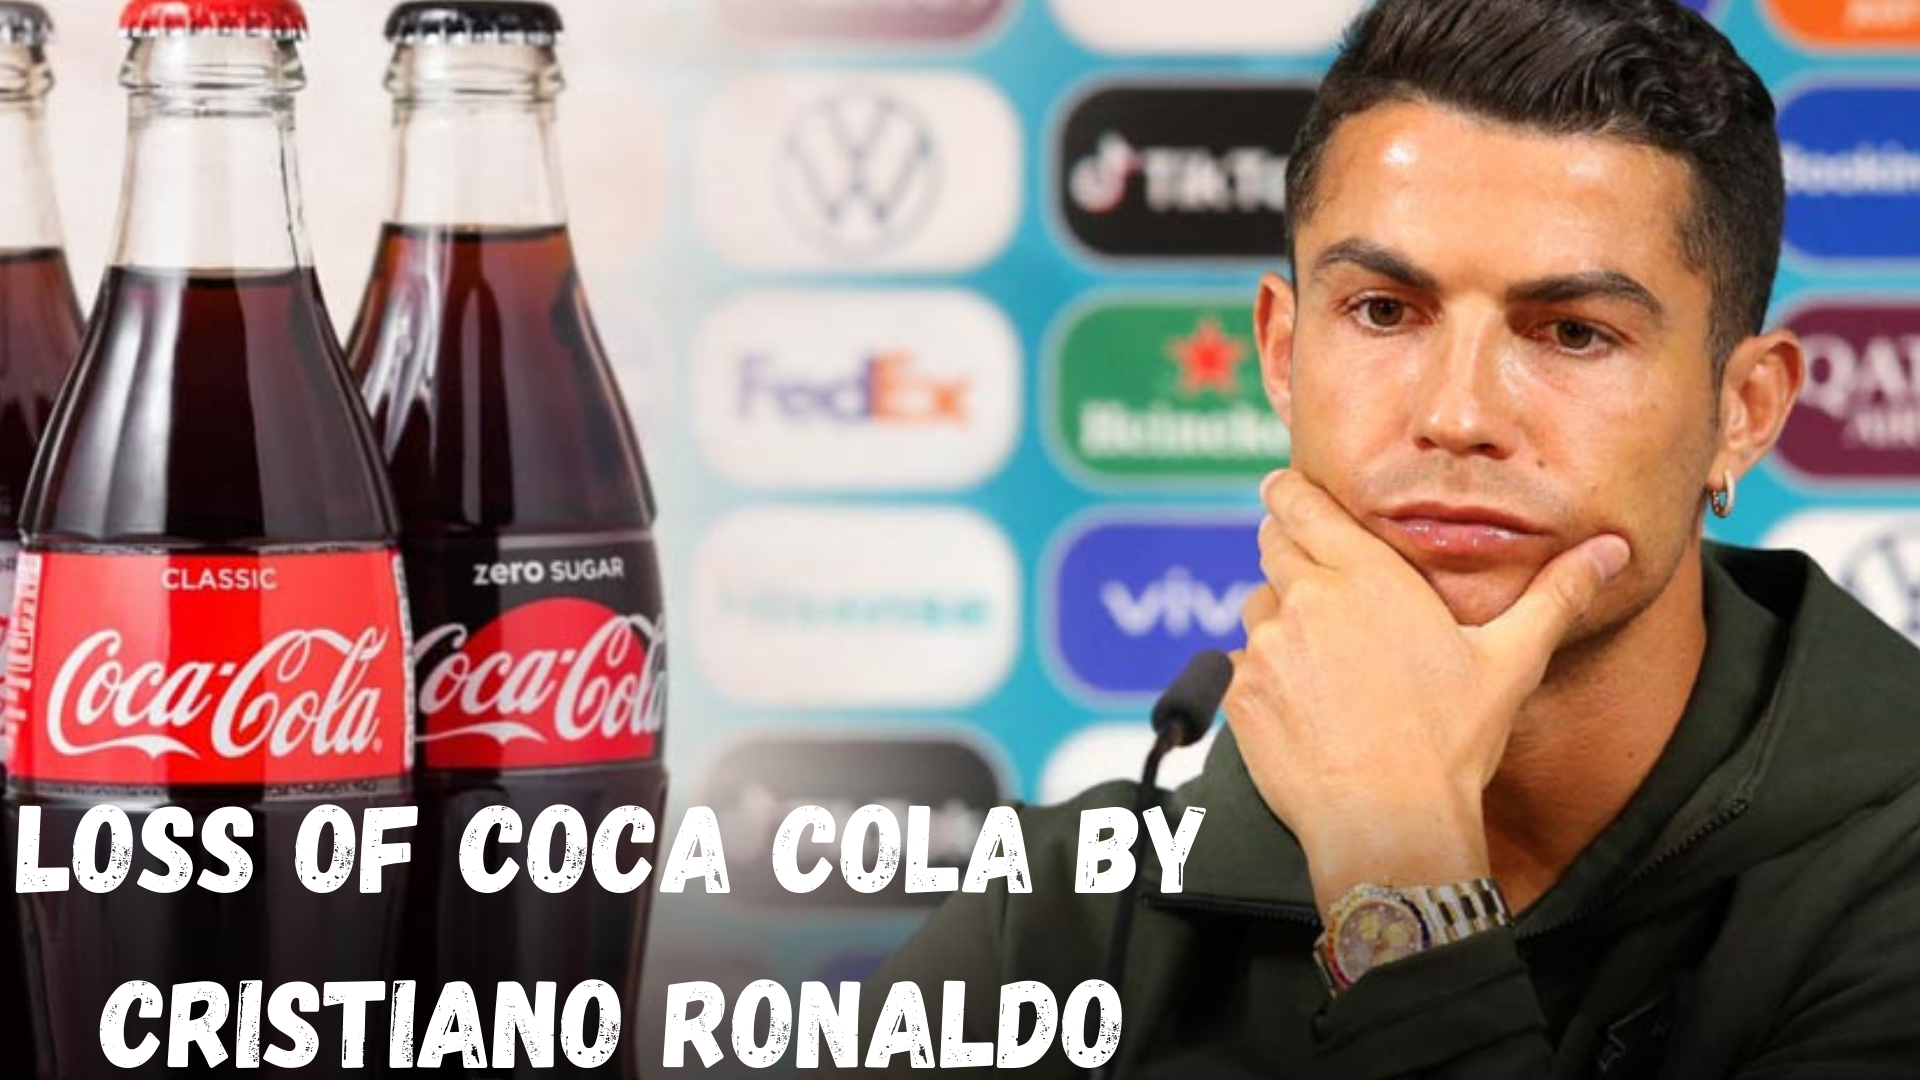 Loss of Coca Cola by Cristiano Ronaldo